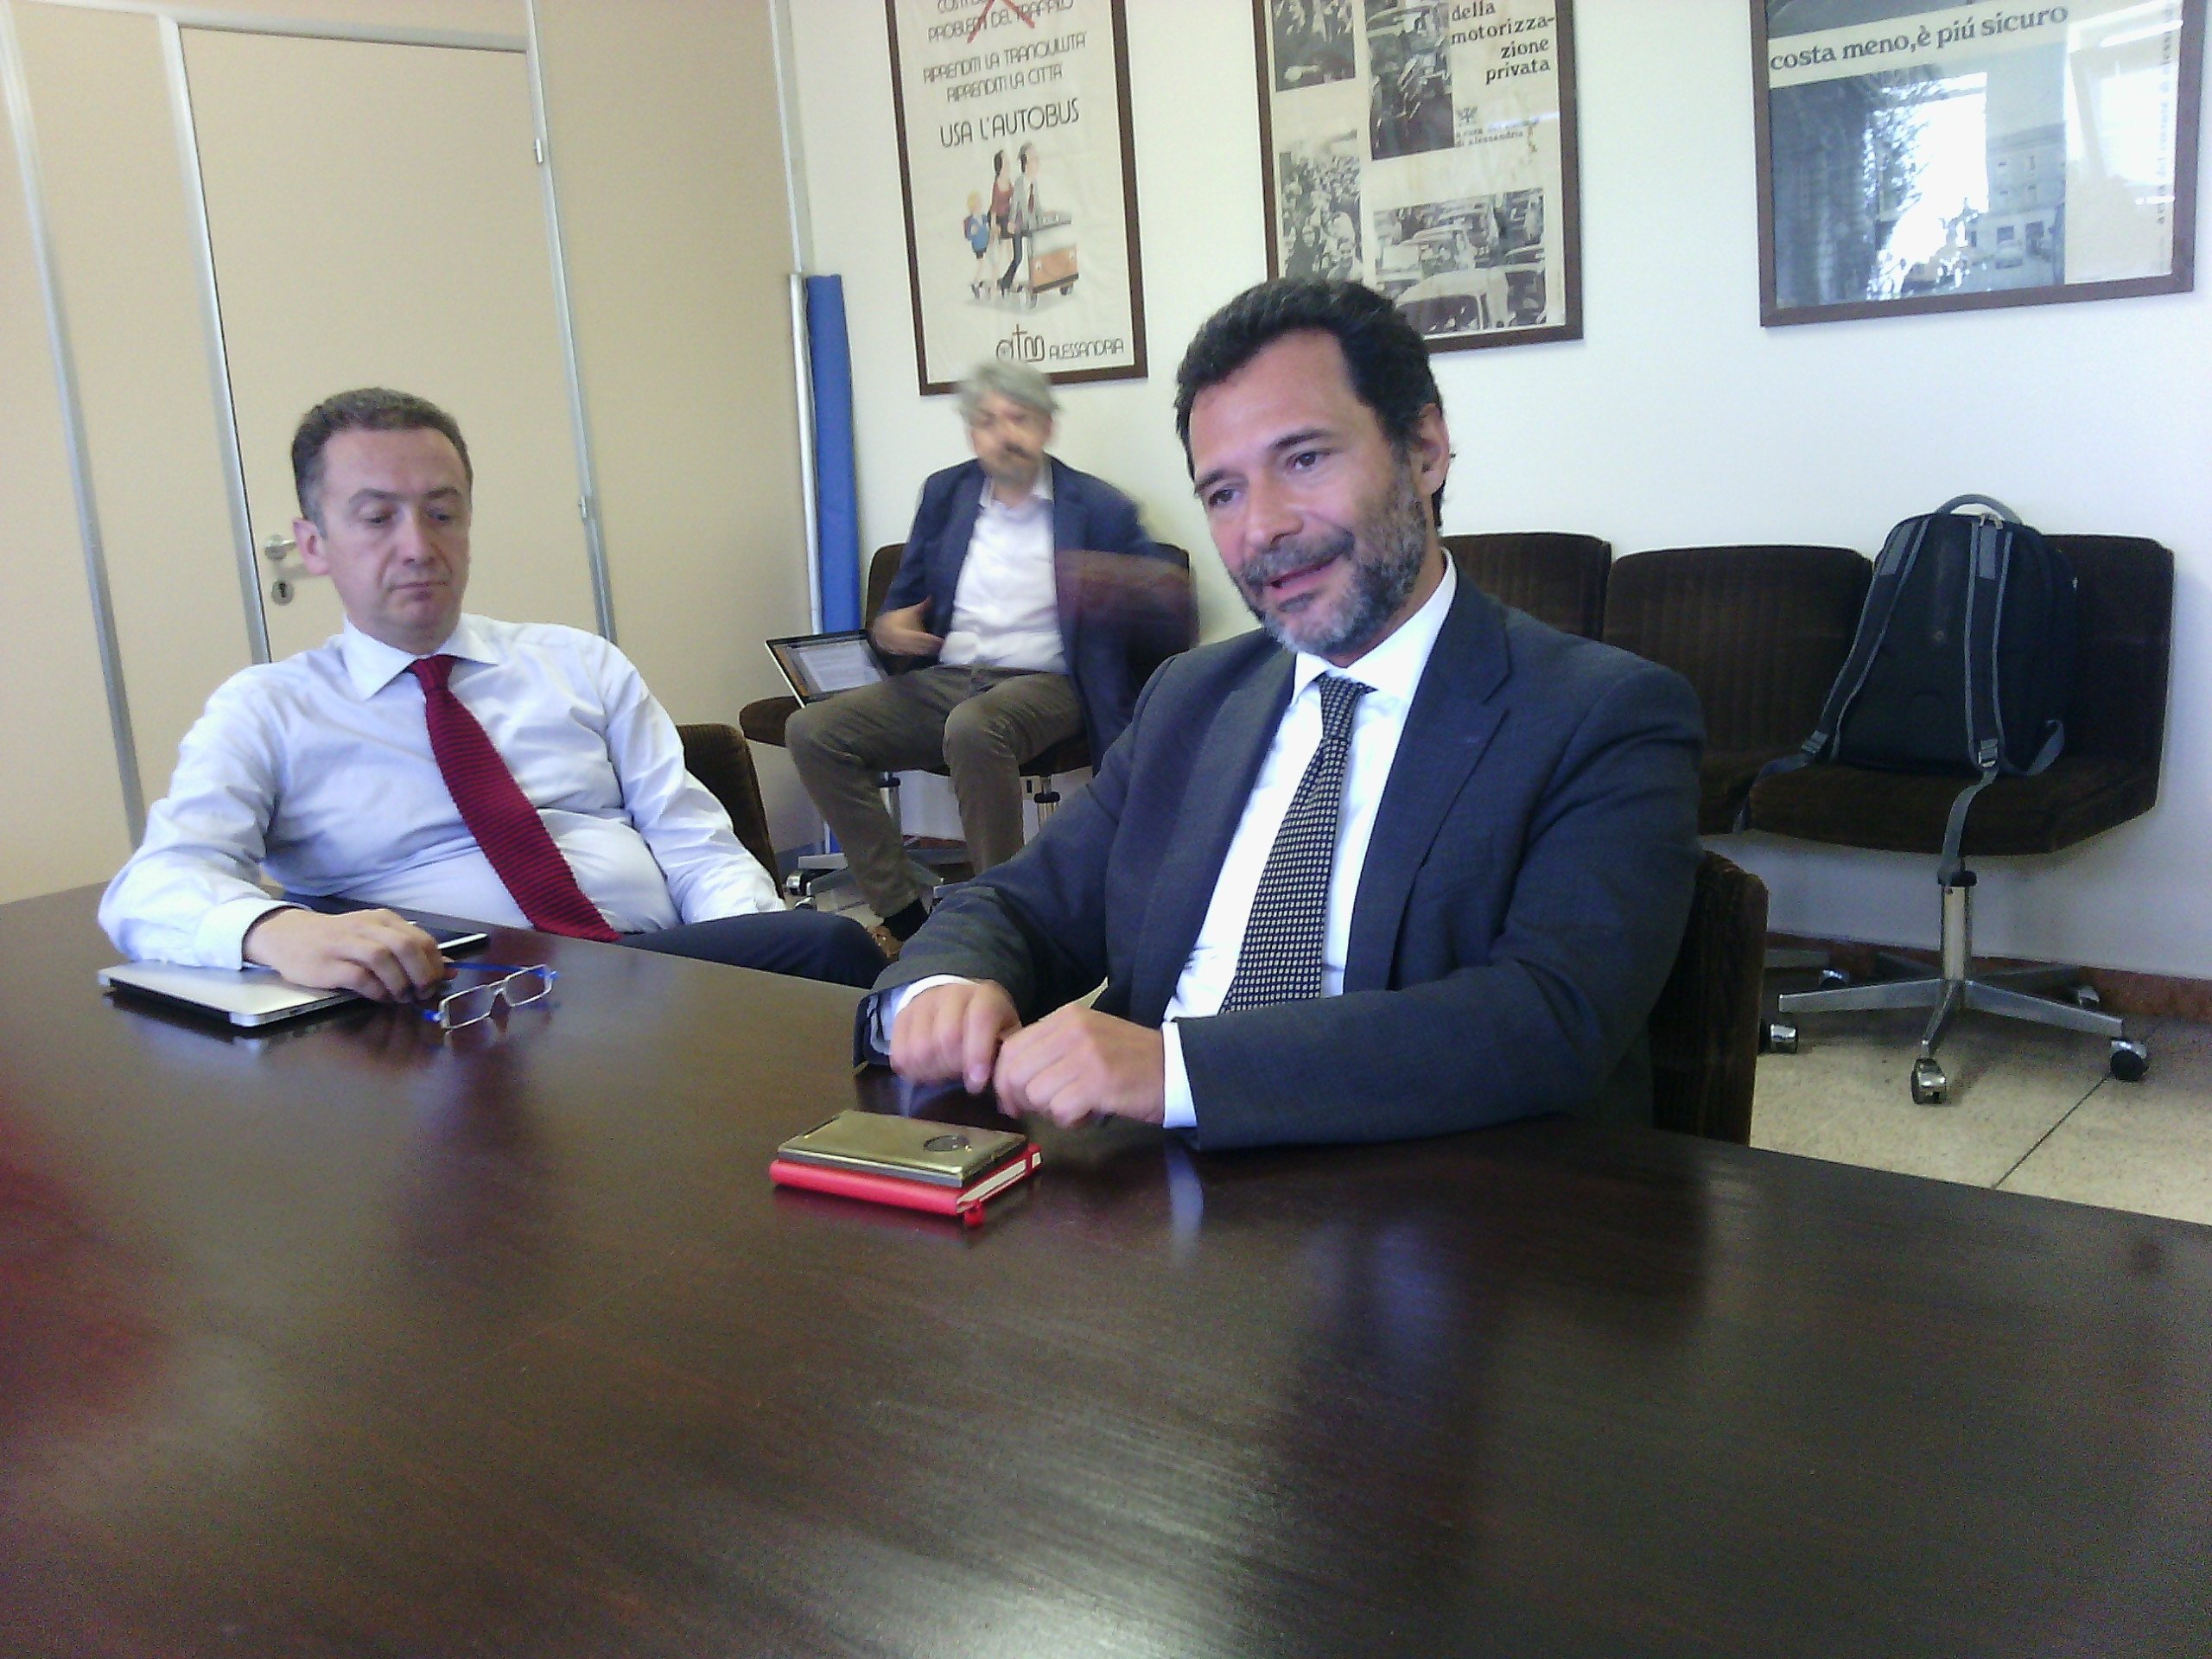 Il nuovo amministratore di Amag Mobilità Stefano Rossi rassicura: “Non sono un tagliatore di teste, esuberi non all’ordine del giorno”